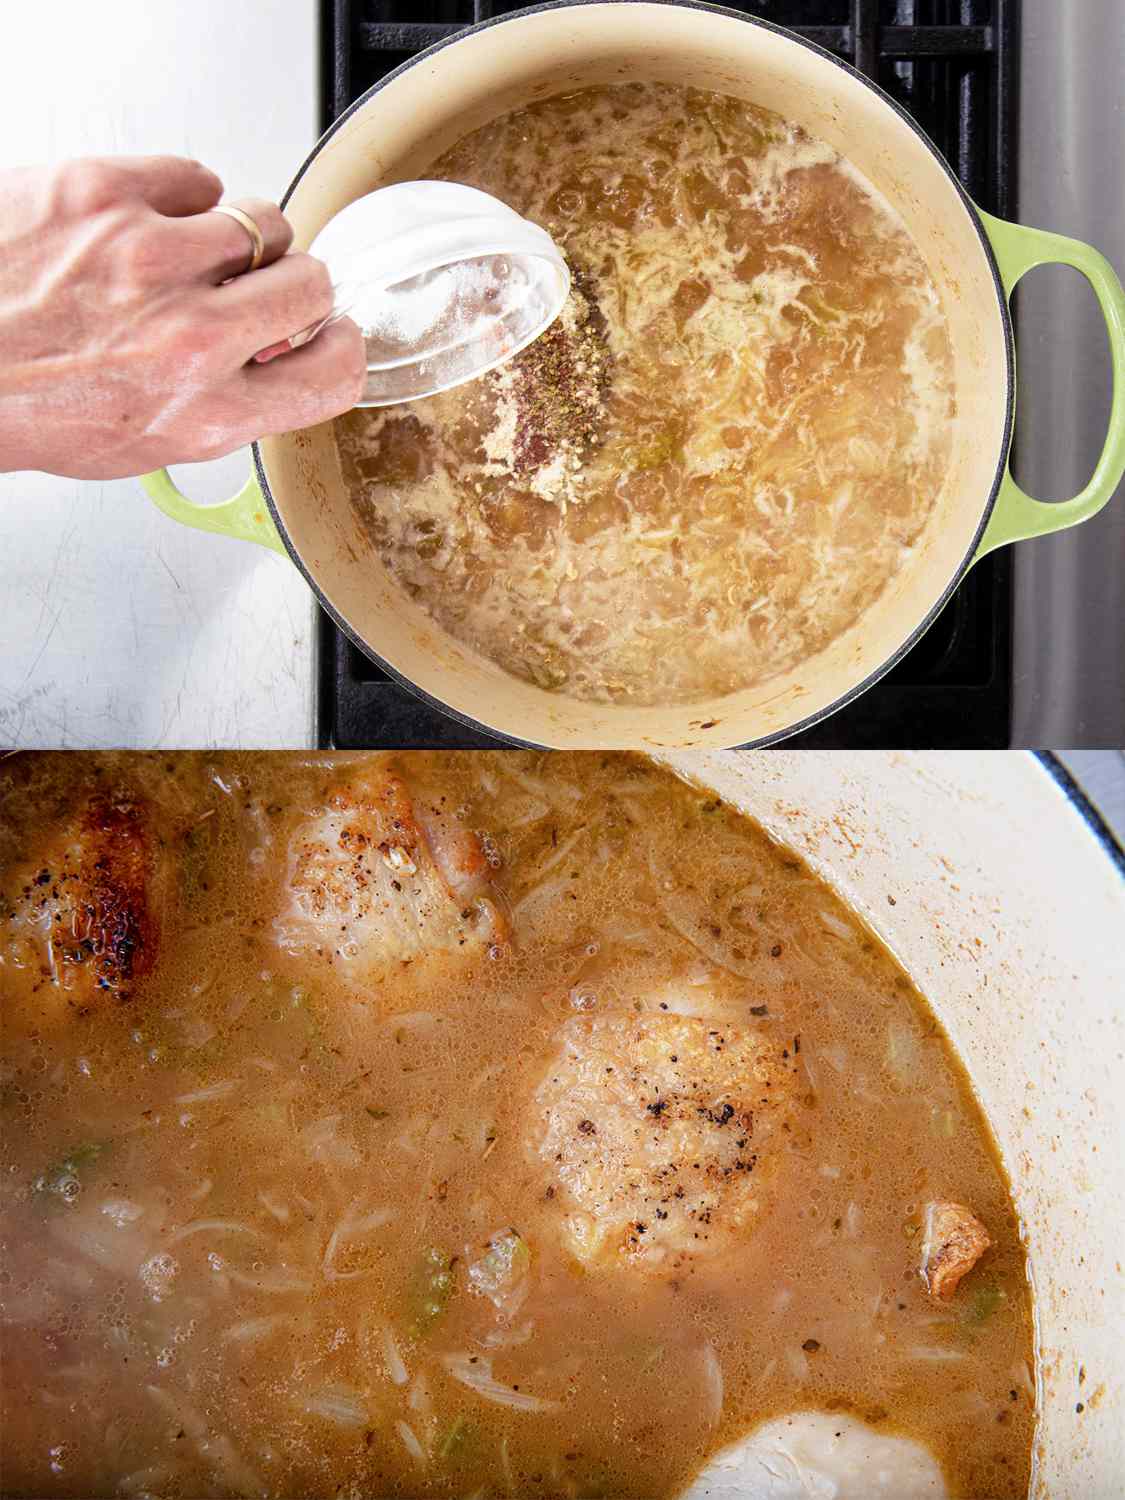 两幅图像拼贴。上图:香料加入煮沸的高汤中。下图:鸡肉煮熟的特写，显示鸡肉块大部分浸在水中